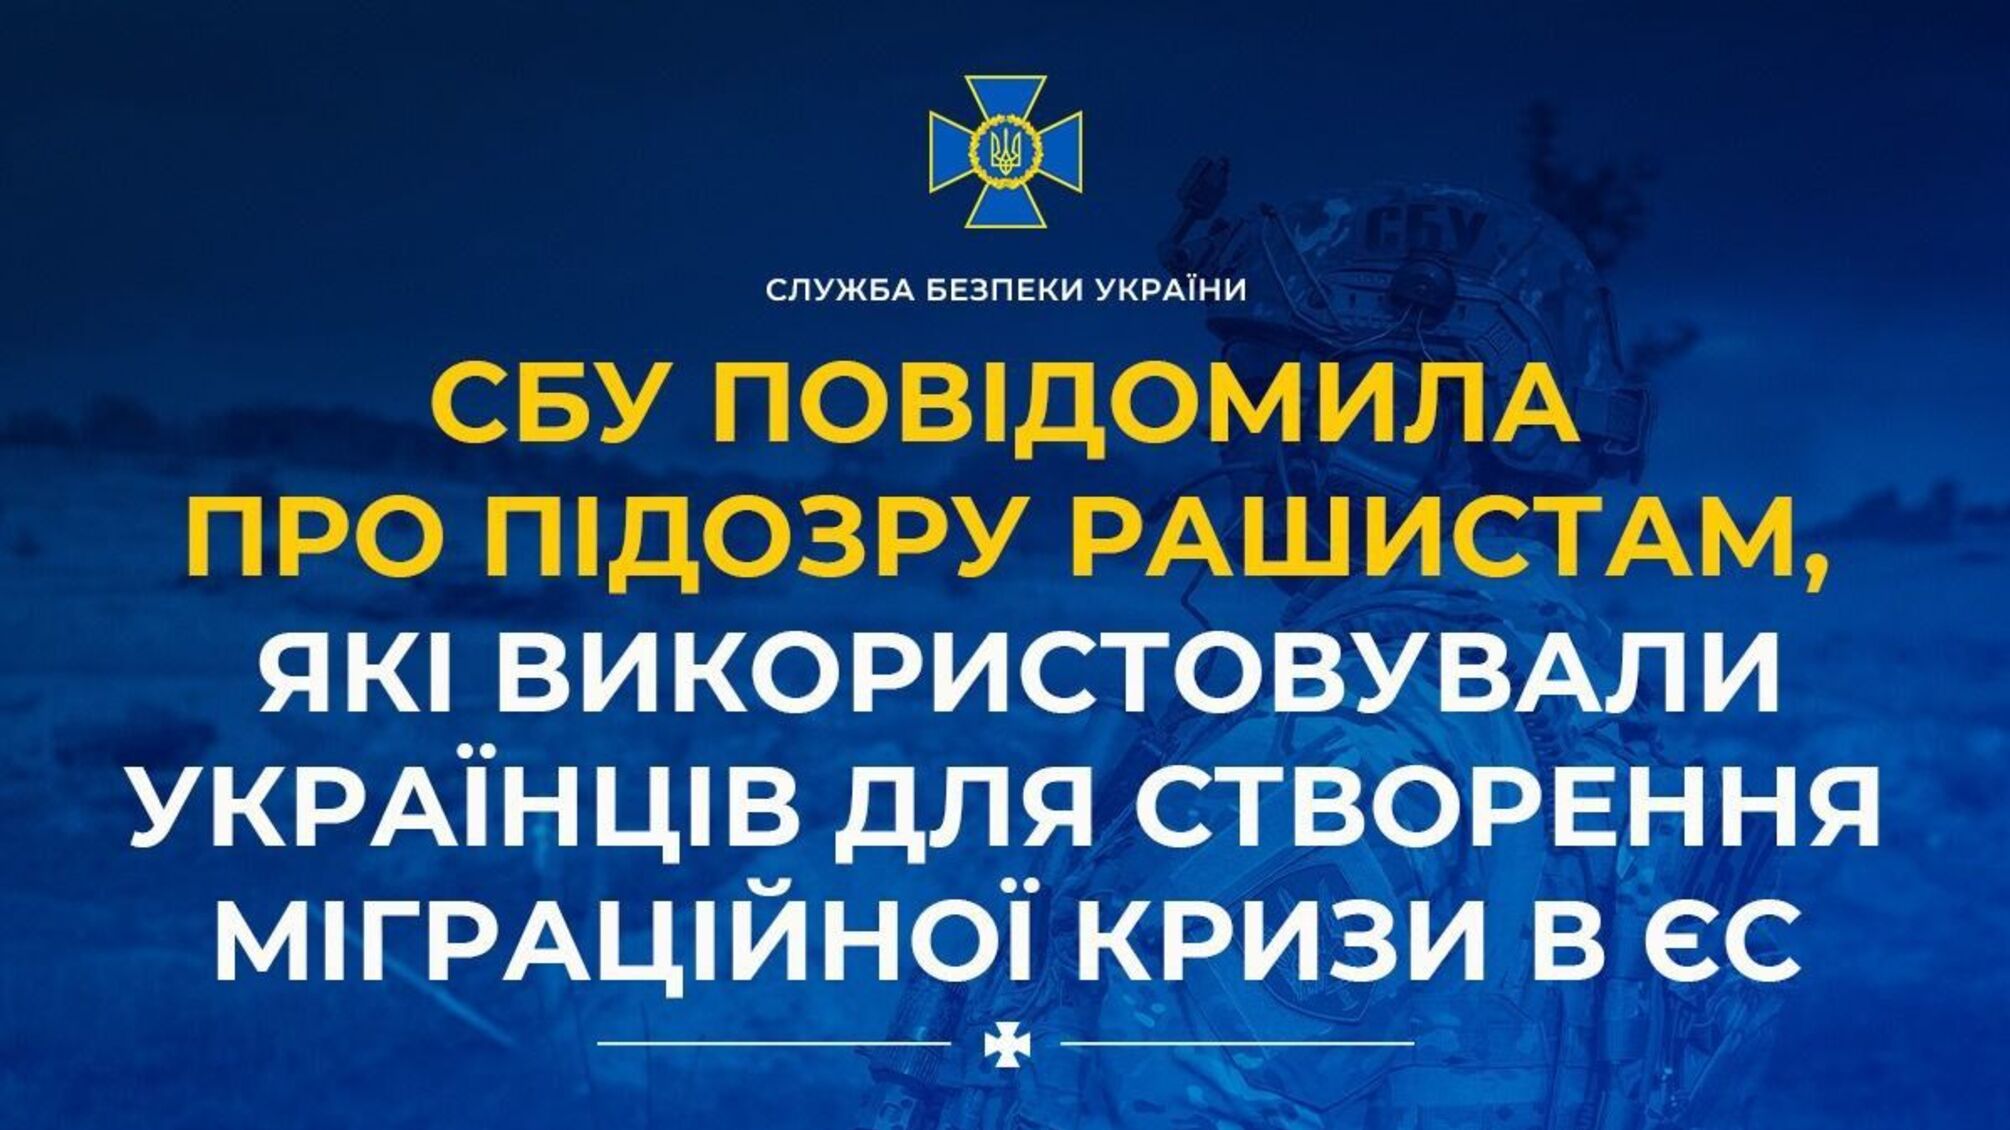 СБУ повідомила про підозру окупантам, які використовували українців для створення міграційної кризи в ЄС